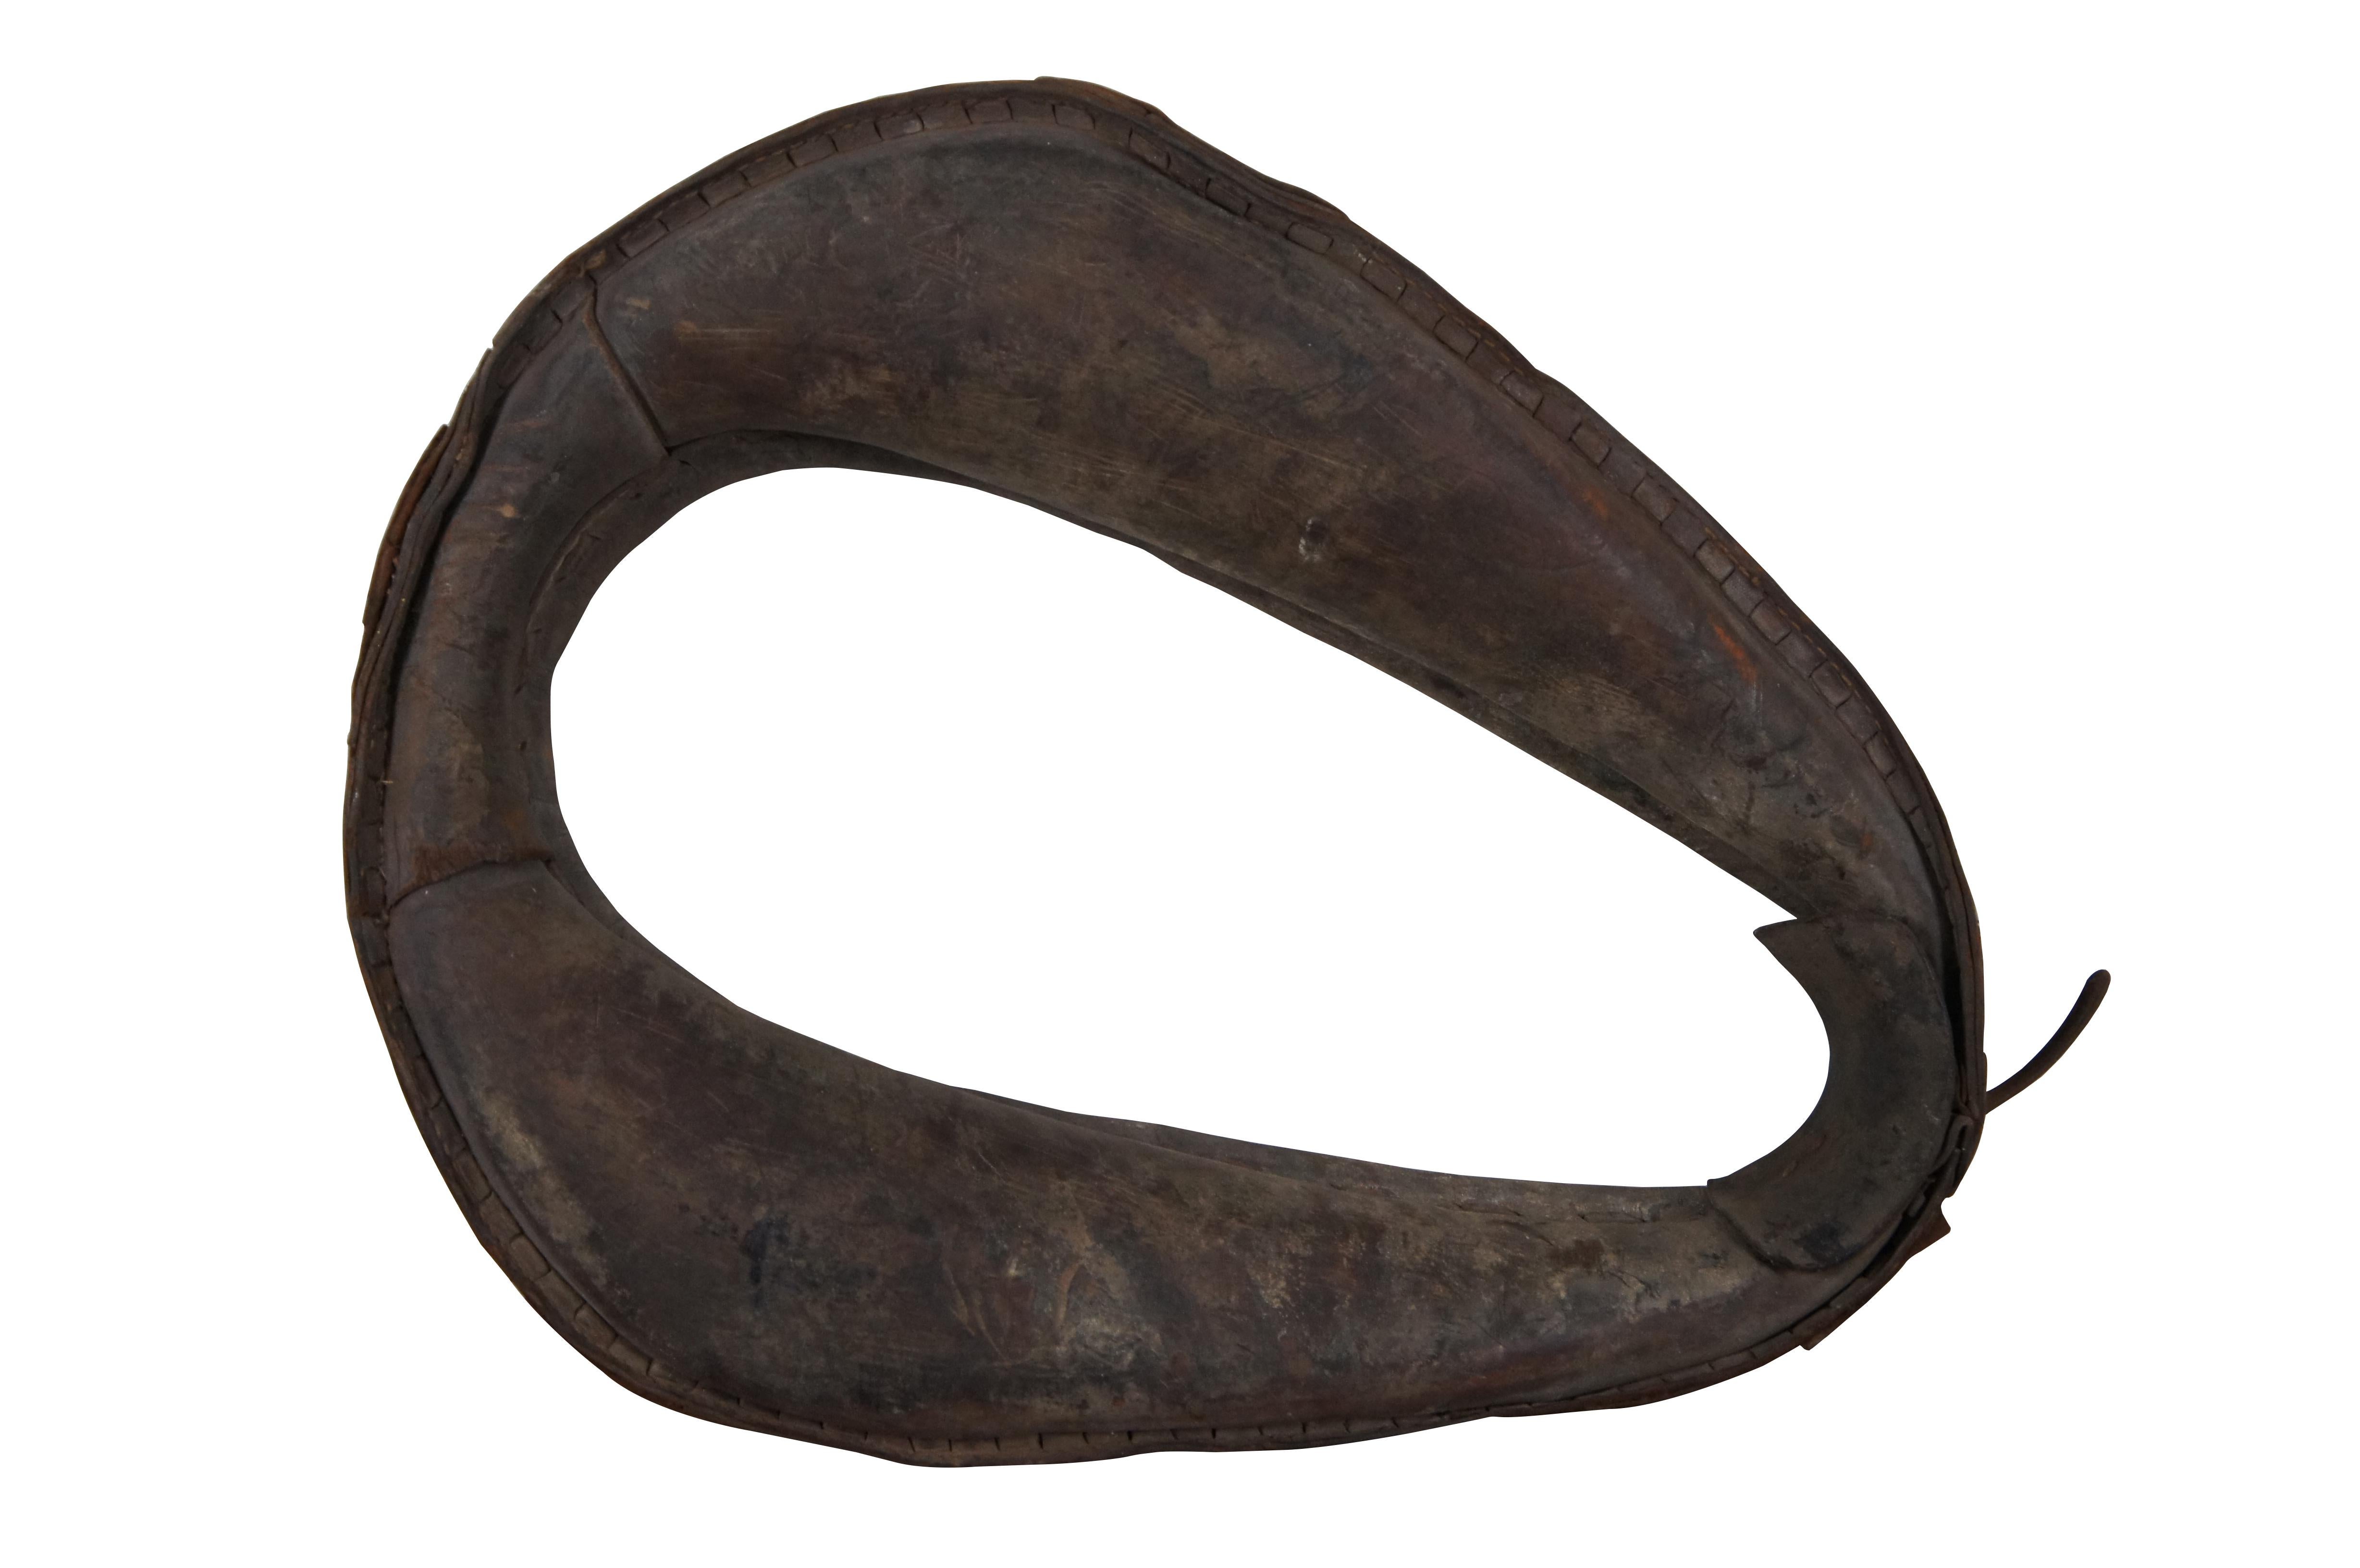 Lot de pièces anciennes (plus une pièce vintage/moderne) de harnachement pour chevaux comprenant : Un collier / joug de charrue en cuir ancien pour cheval ou mule. Six jambons anciens en bois et en fer, dont trois avec des bouchons en fer / métal.